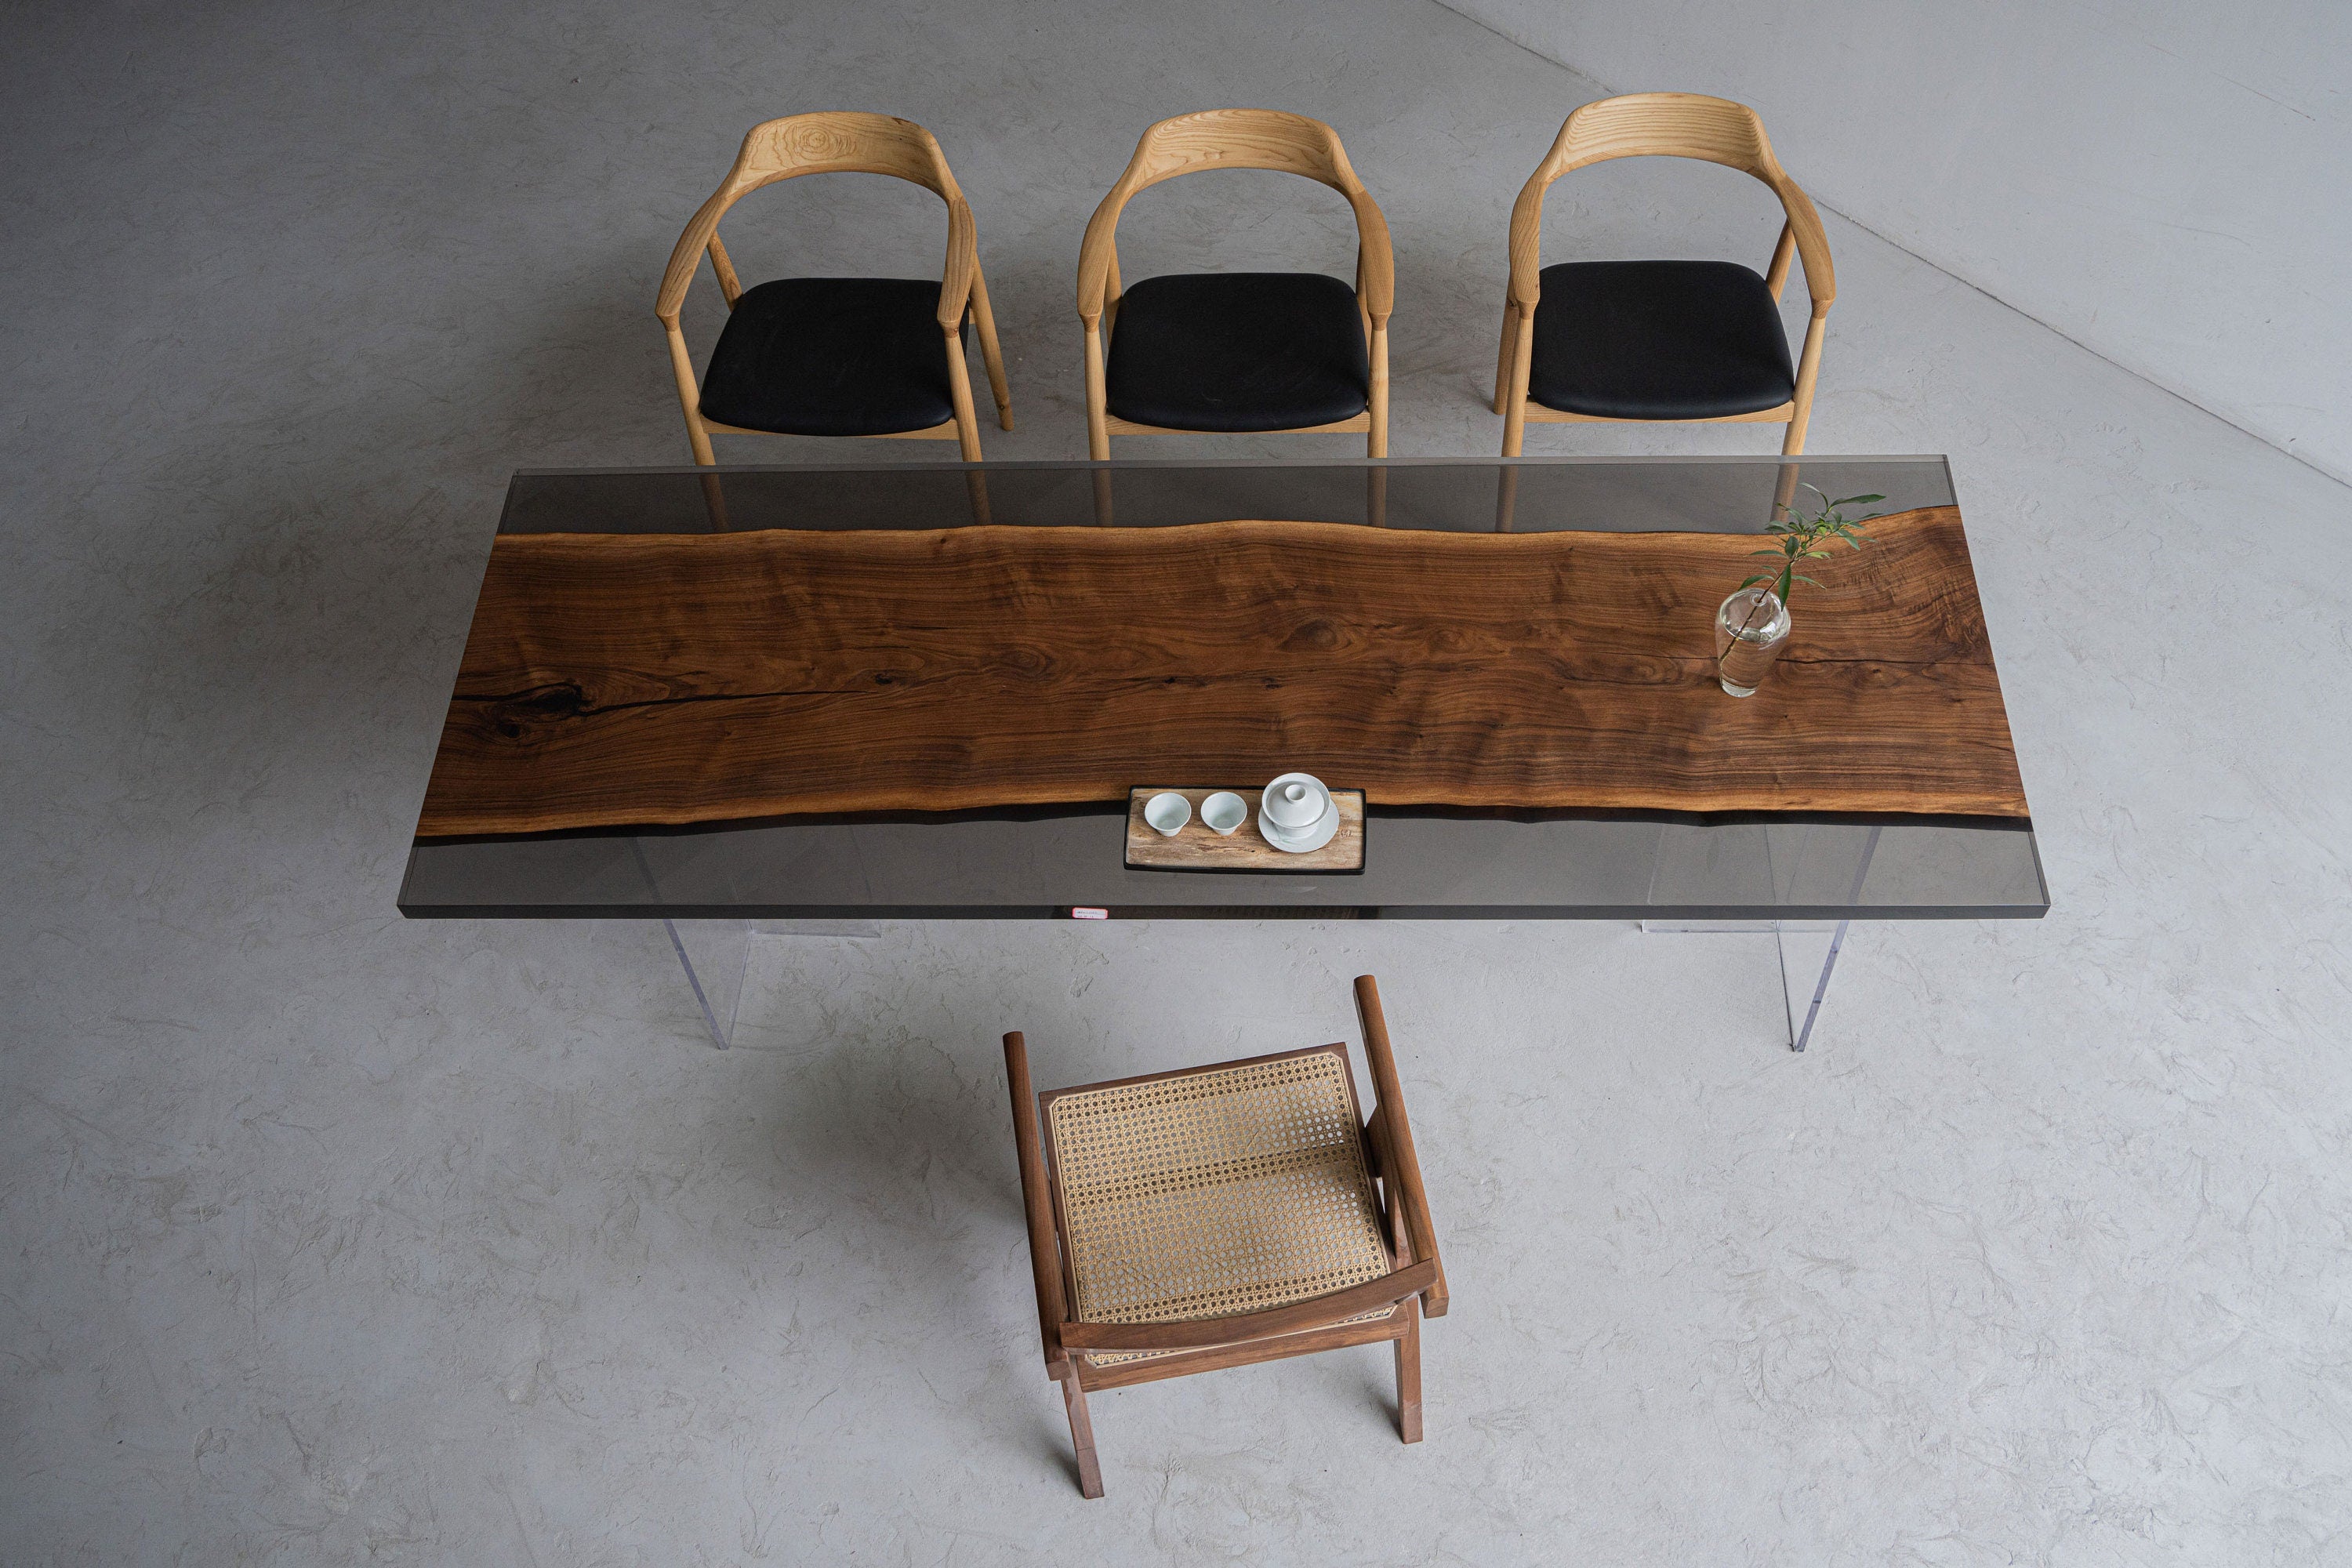 طاولة راتنجات الايبوكسي من خشب الجوز الأسود الصلب، طاولة طعام، خشب الجوز الأسود